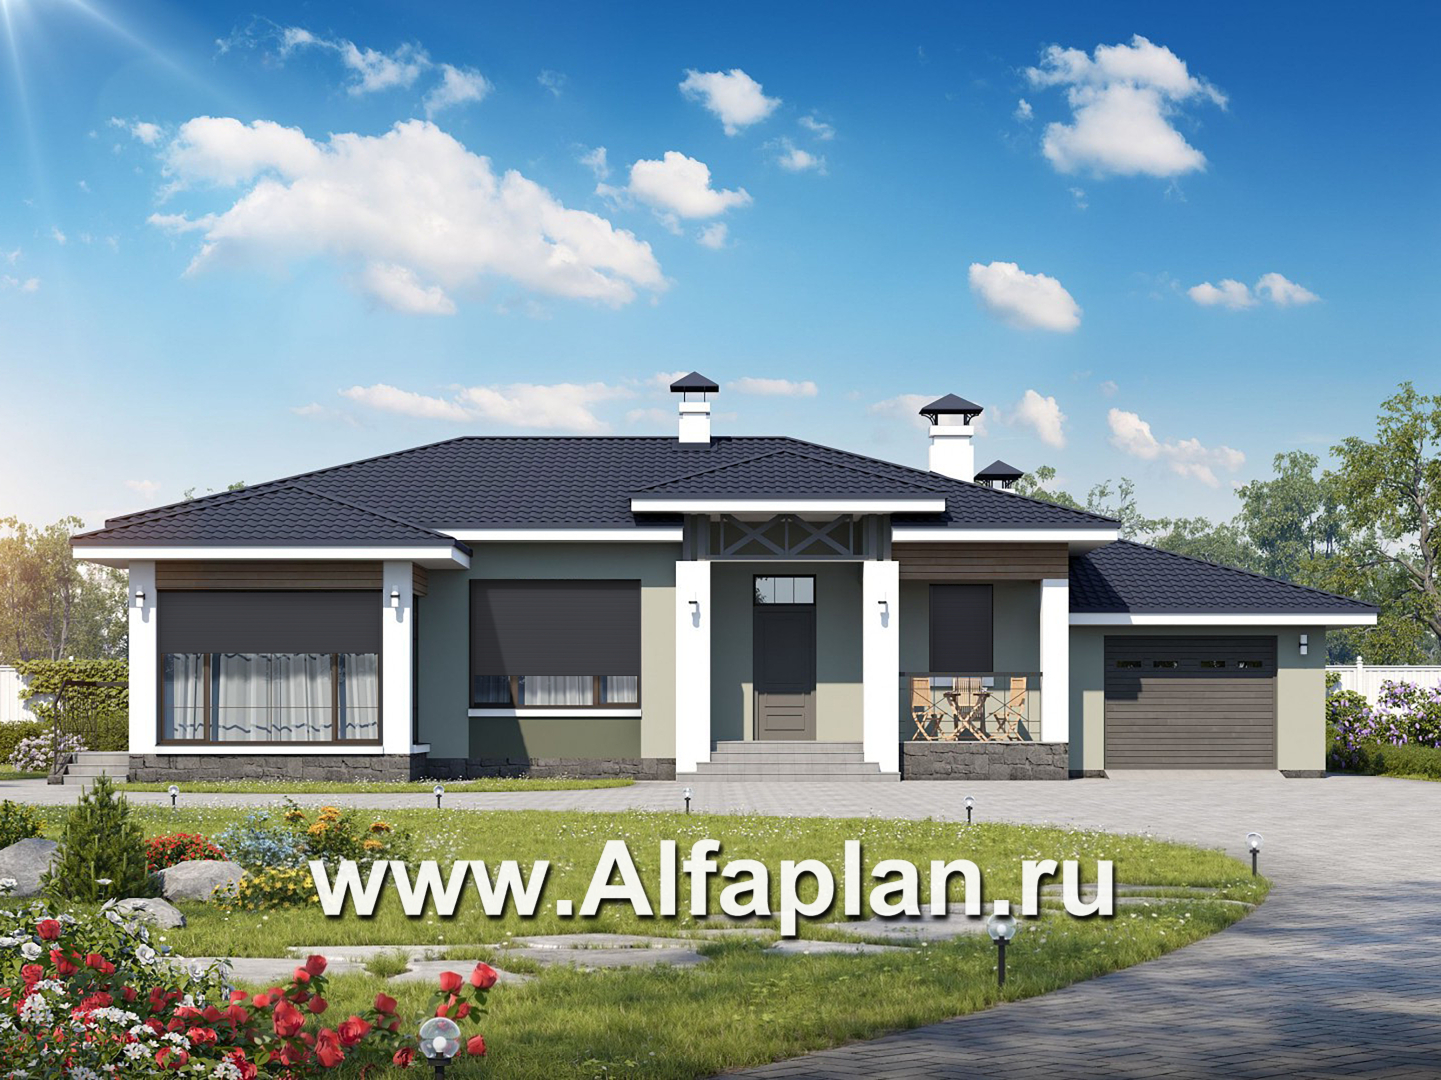 Alfaplan ru проекты домов одноэтажных. Одноэтажный коттедж с Альфаплан проектом. Одноэтажный дом Альфаплан. Альфаплан одноэтажный дом с террасой. Z500 Альфаплан.